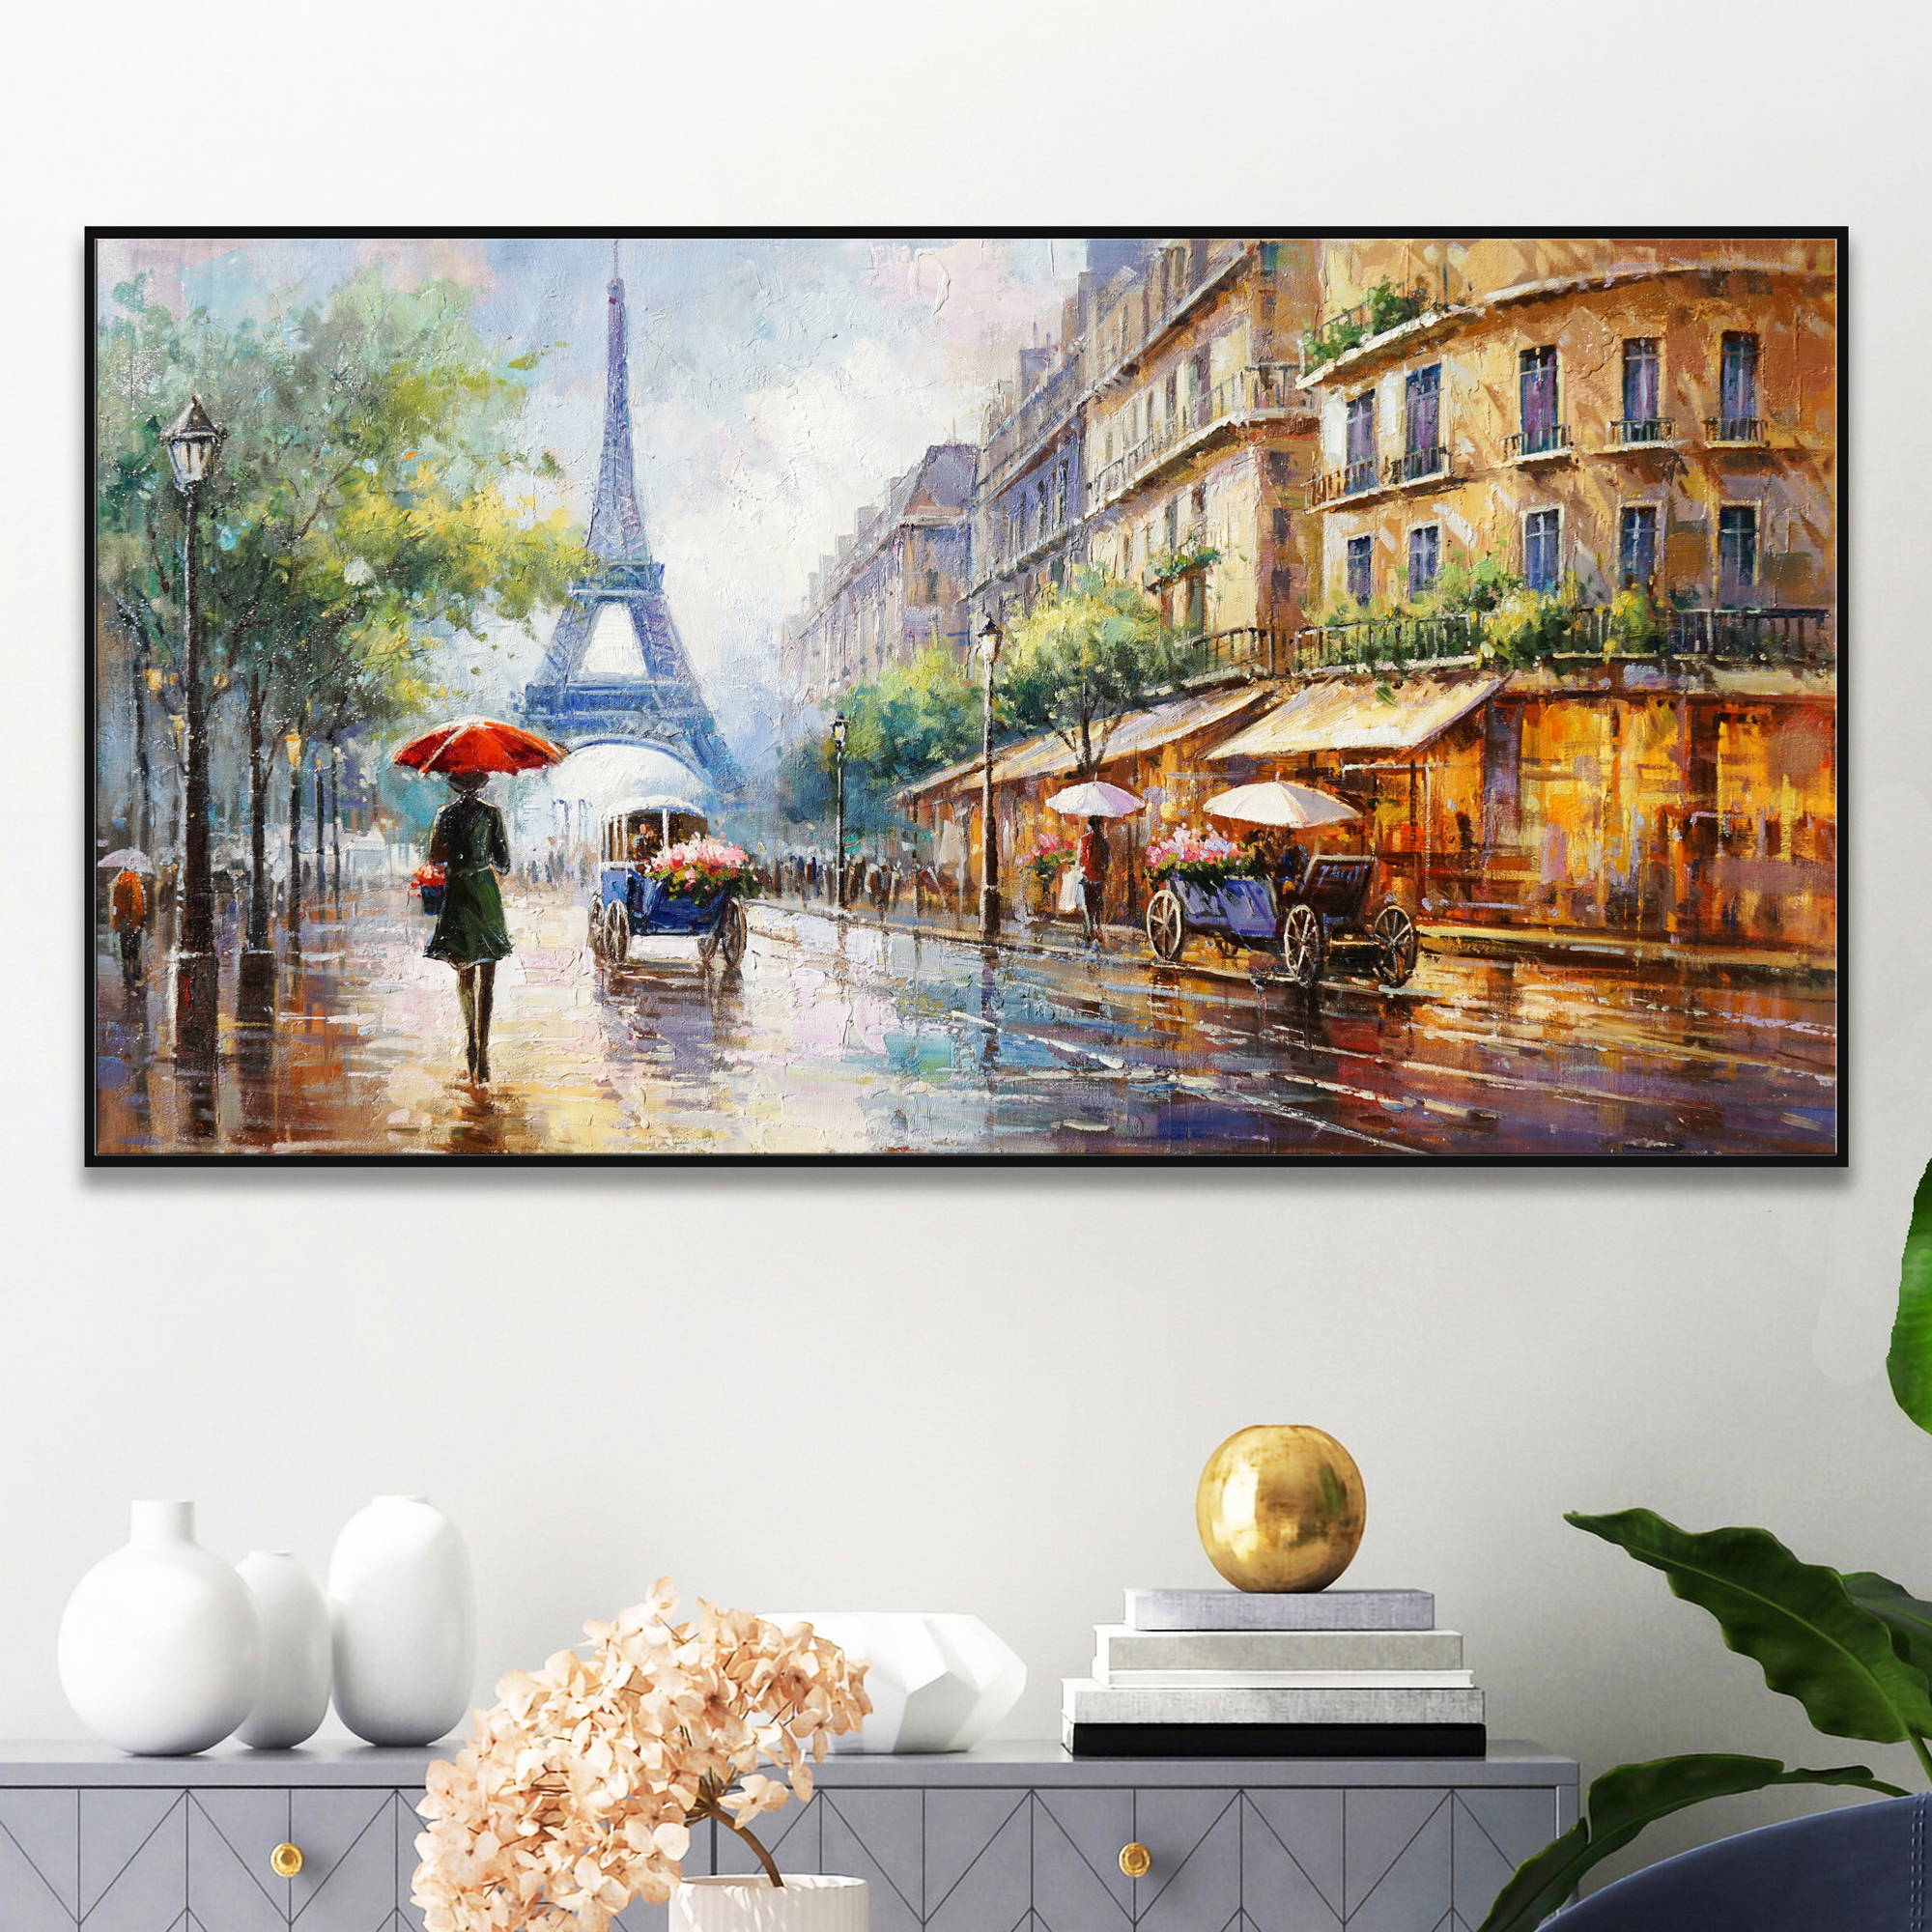 Quadro vivace di una strada di Parigi con pioggia, persone, e la Torre Eiffel sullo sfondo